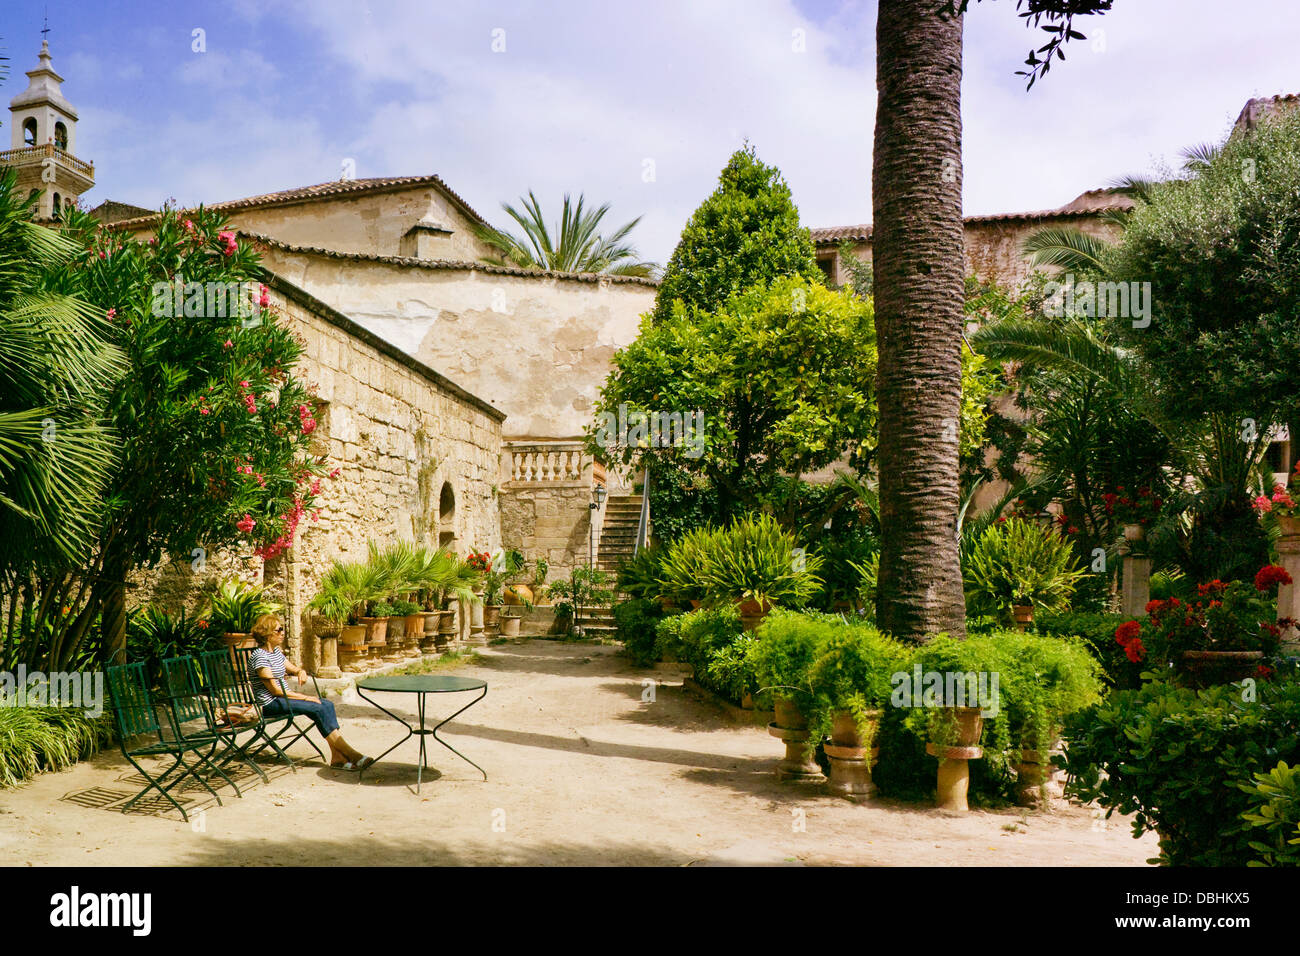 Garden of the Arab Baths, Palma de Mallorca Stock Photo